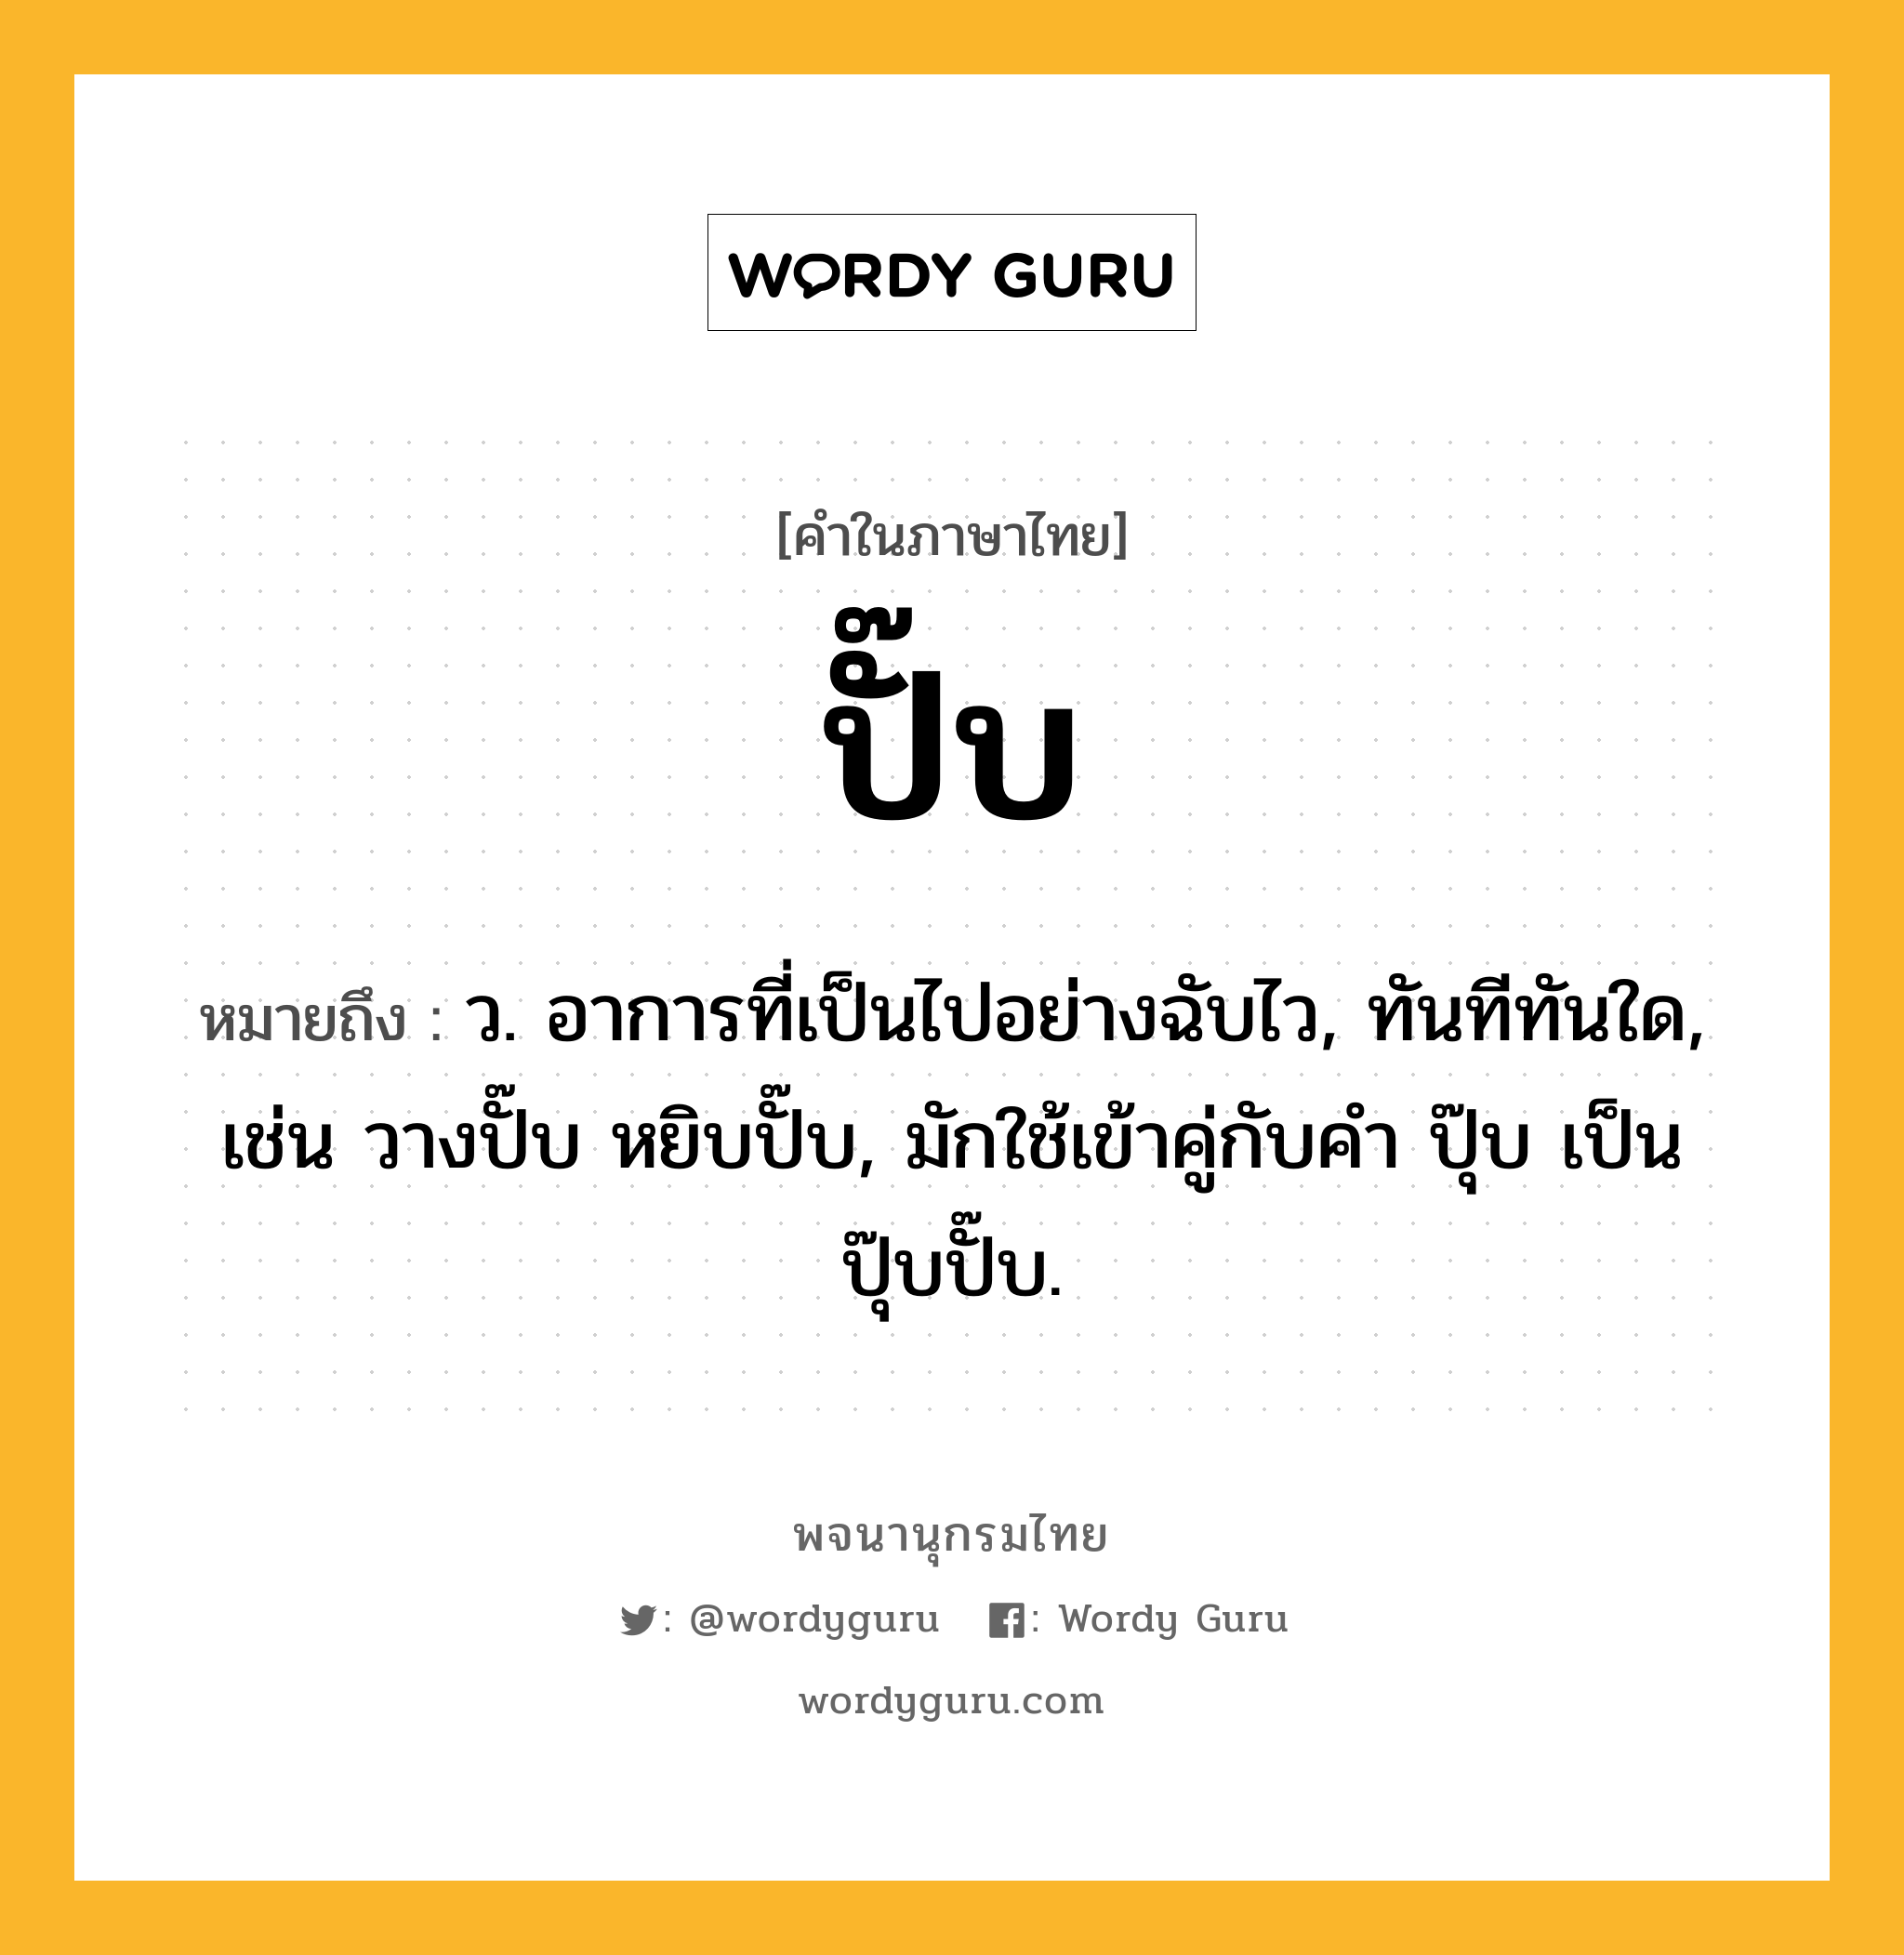 ปั๊บ หมายถึงอะไร?, คำในภาษาไทย ปั๊บ หมายถึง ว. อาการที่เป็นไปอย่างฉับไว, ทันทีทันใด, เช่น วางปั๊บ หยิบปั๊บ, มักใช้เข้าคู่กับคำ ปุ๊บ เป็น ปุ๊บปั๊บ.